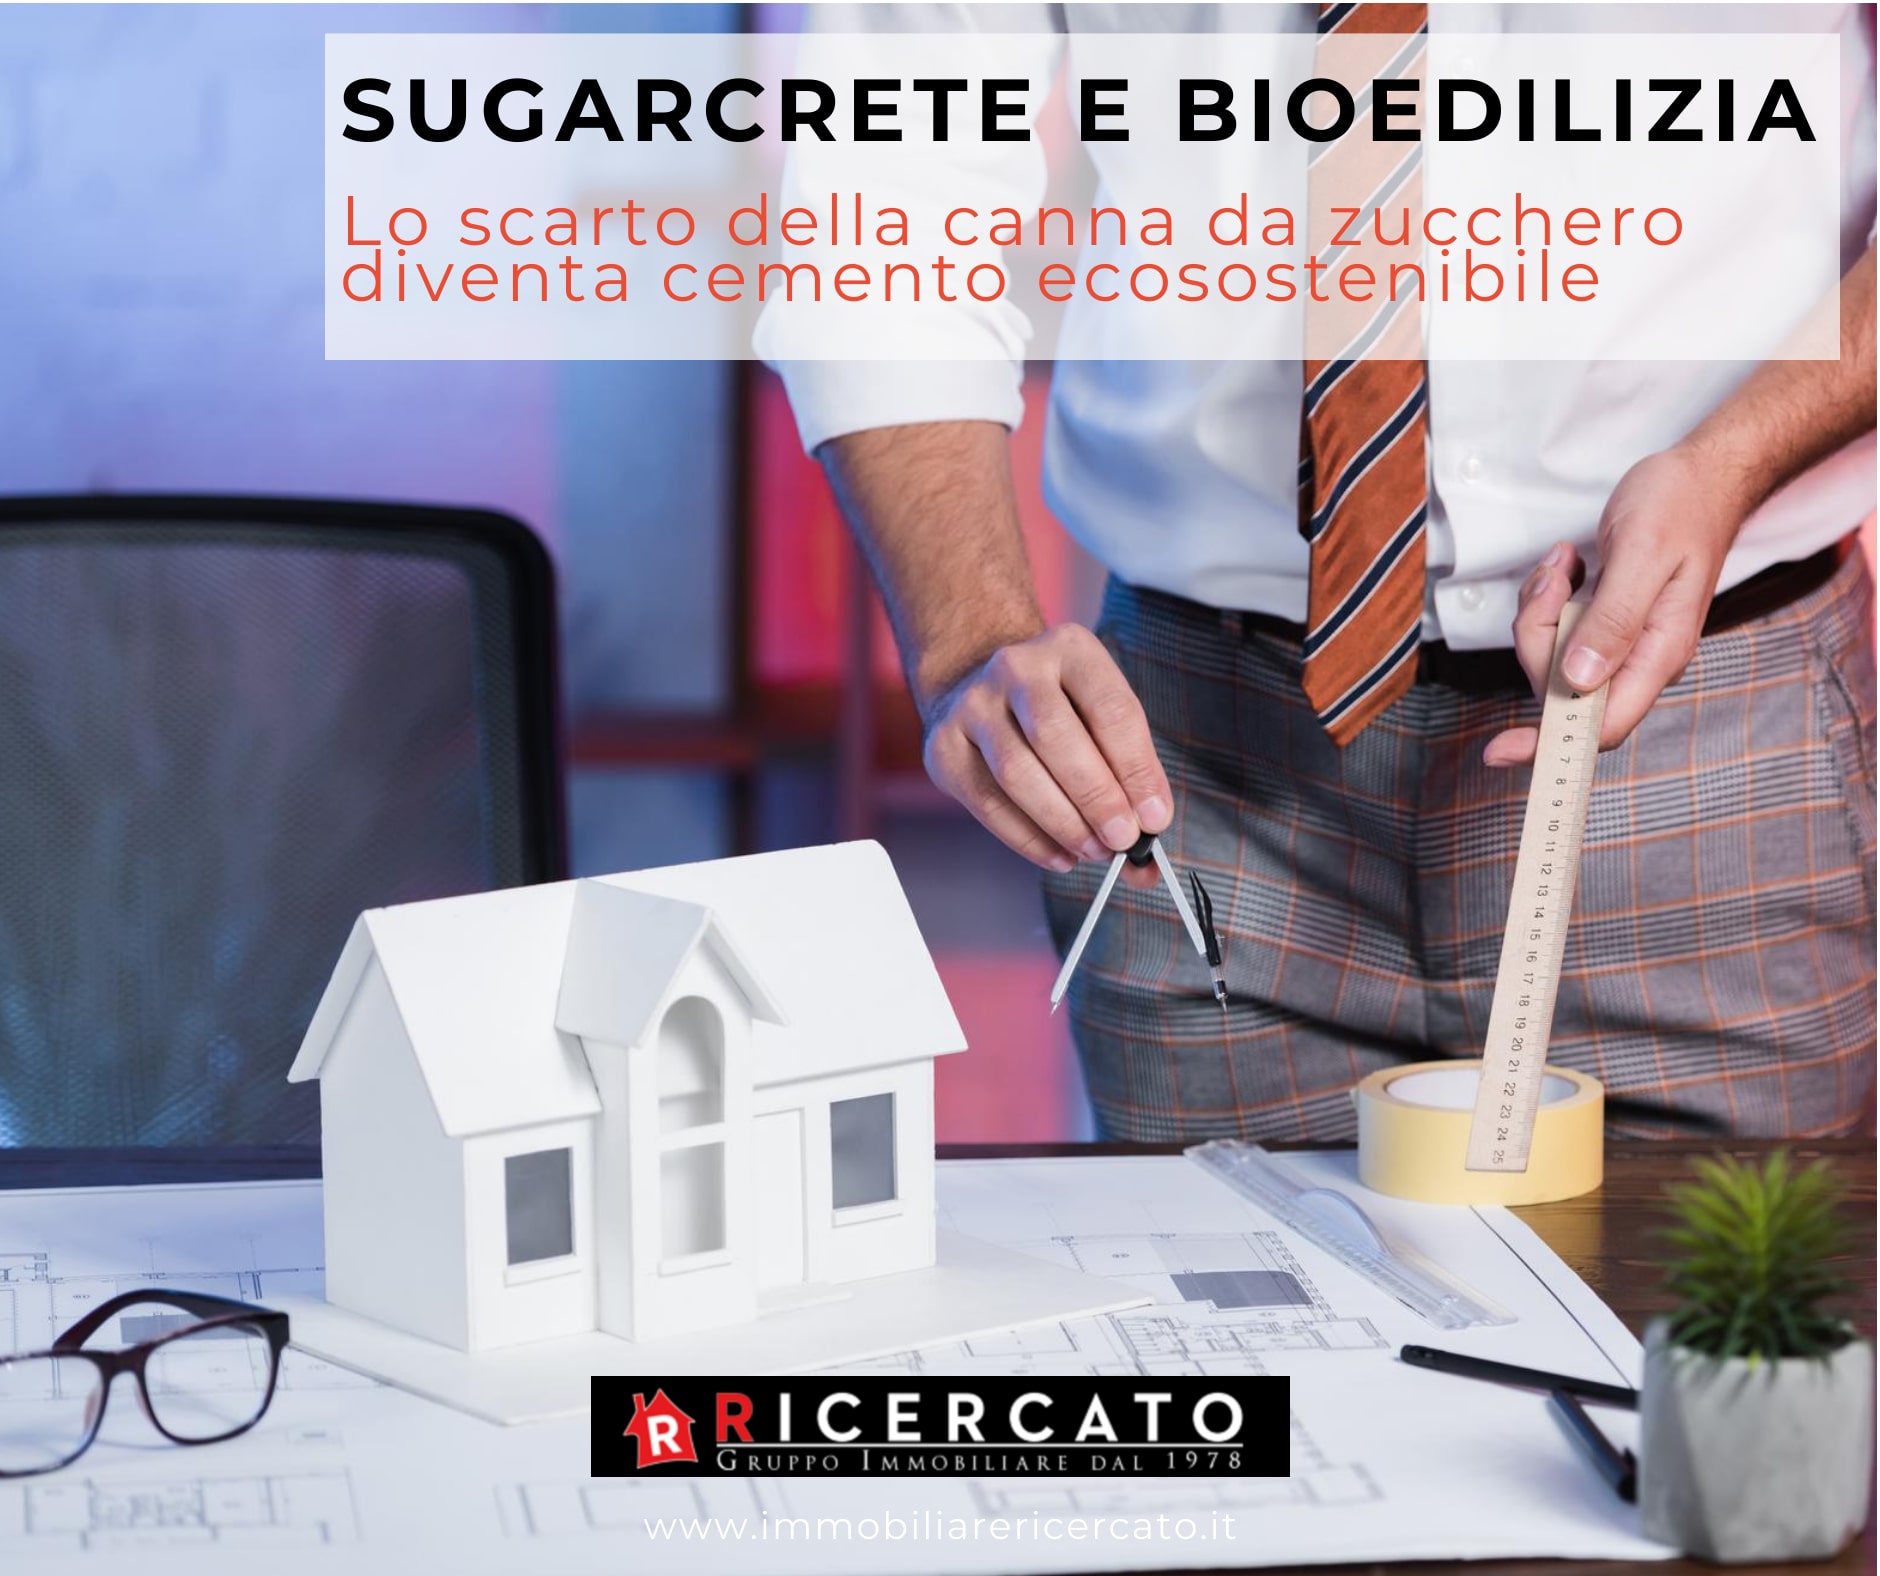 Sugarcrete e bioedilizia agenzia immobiliare ricercato